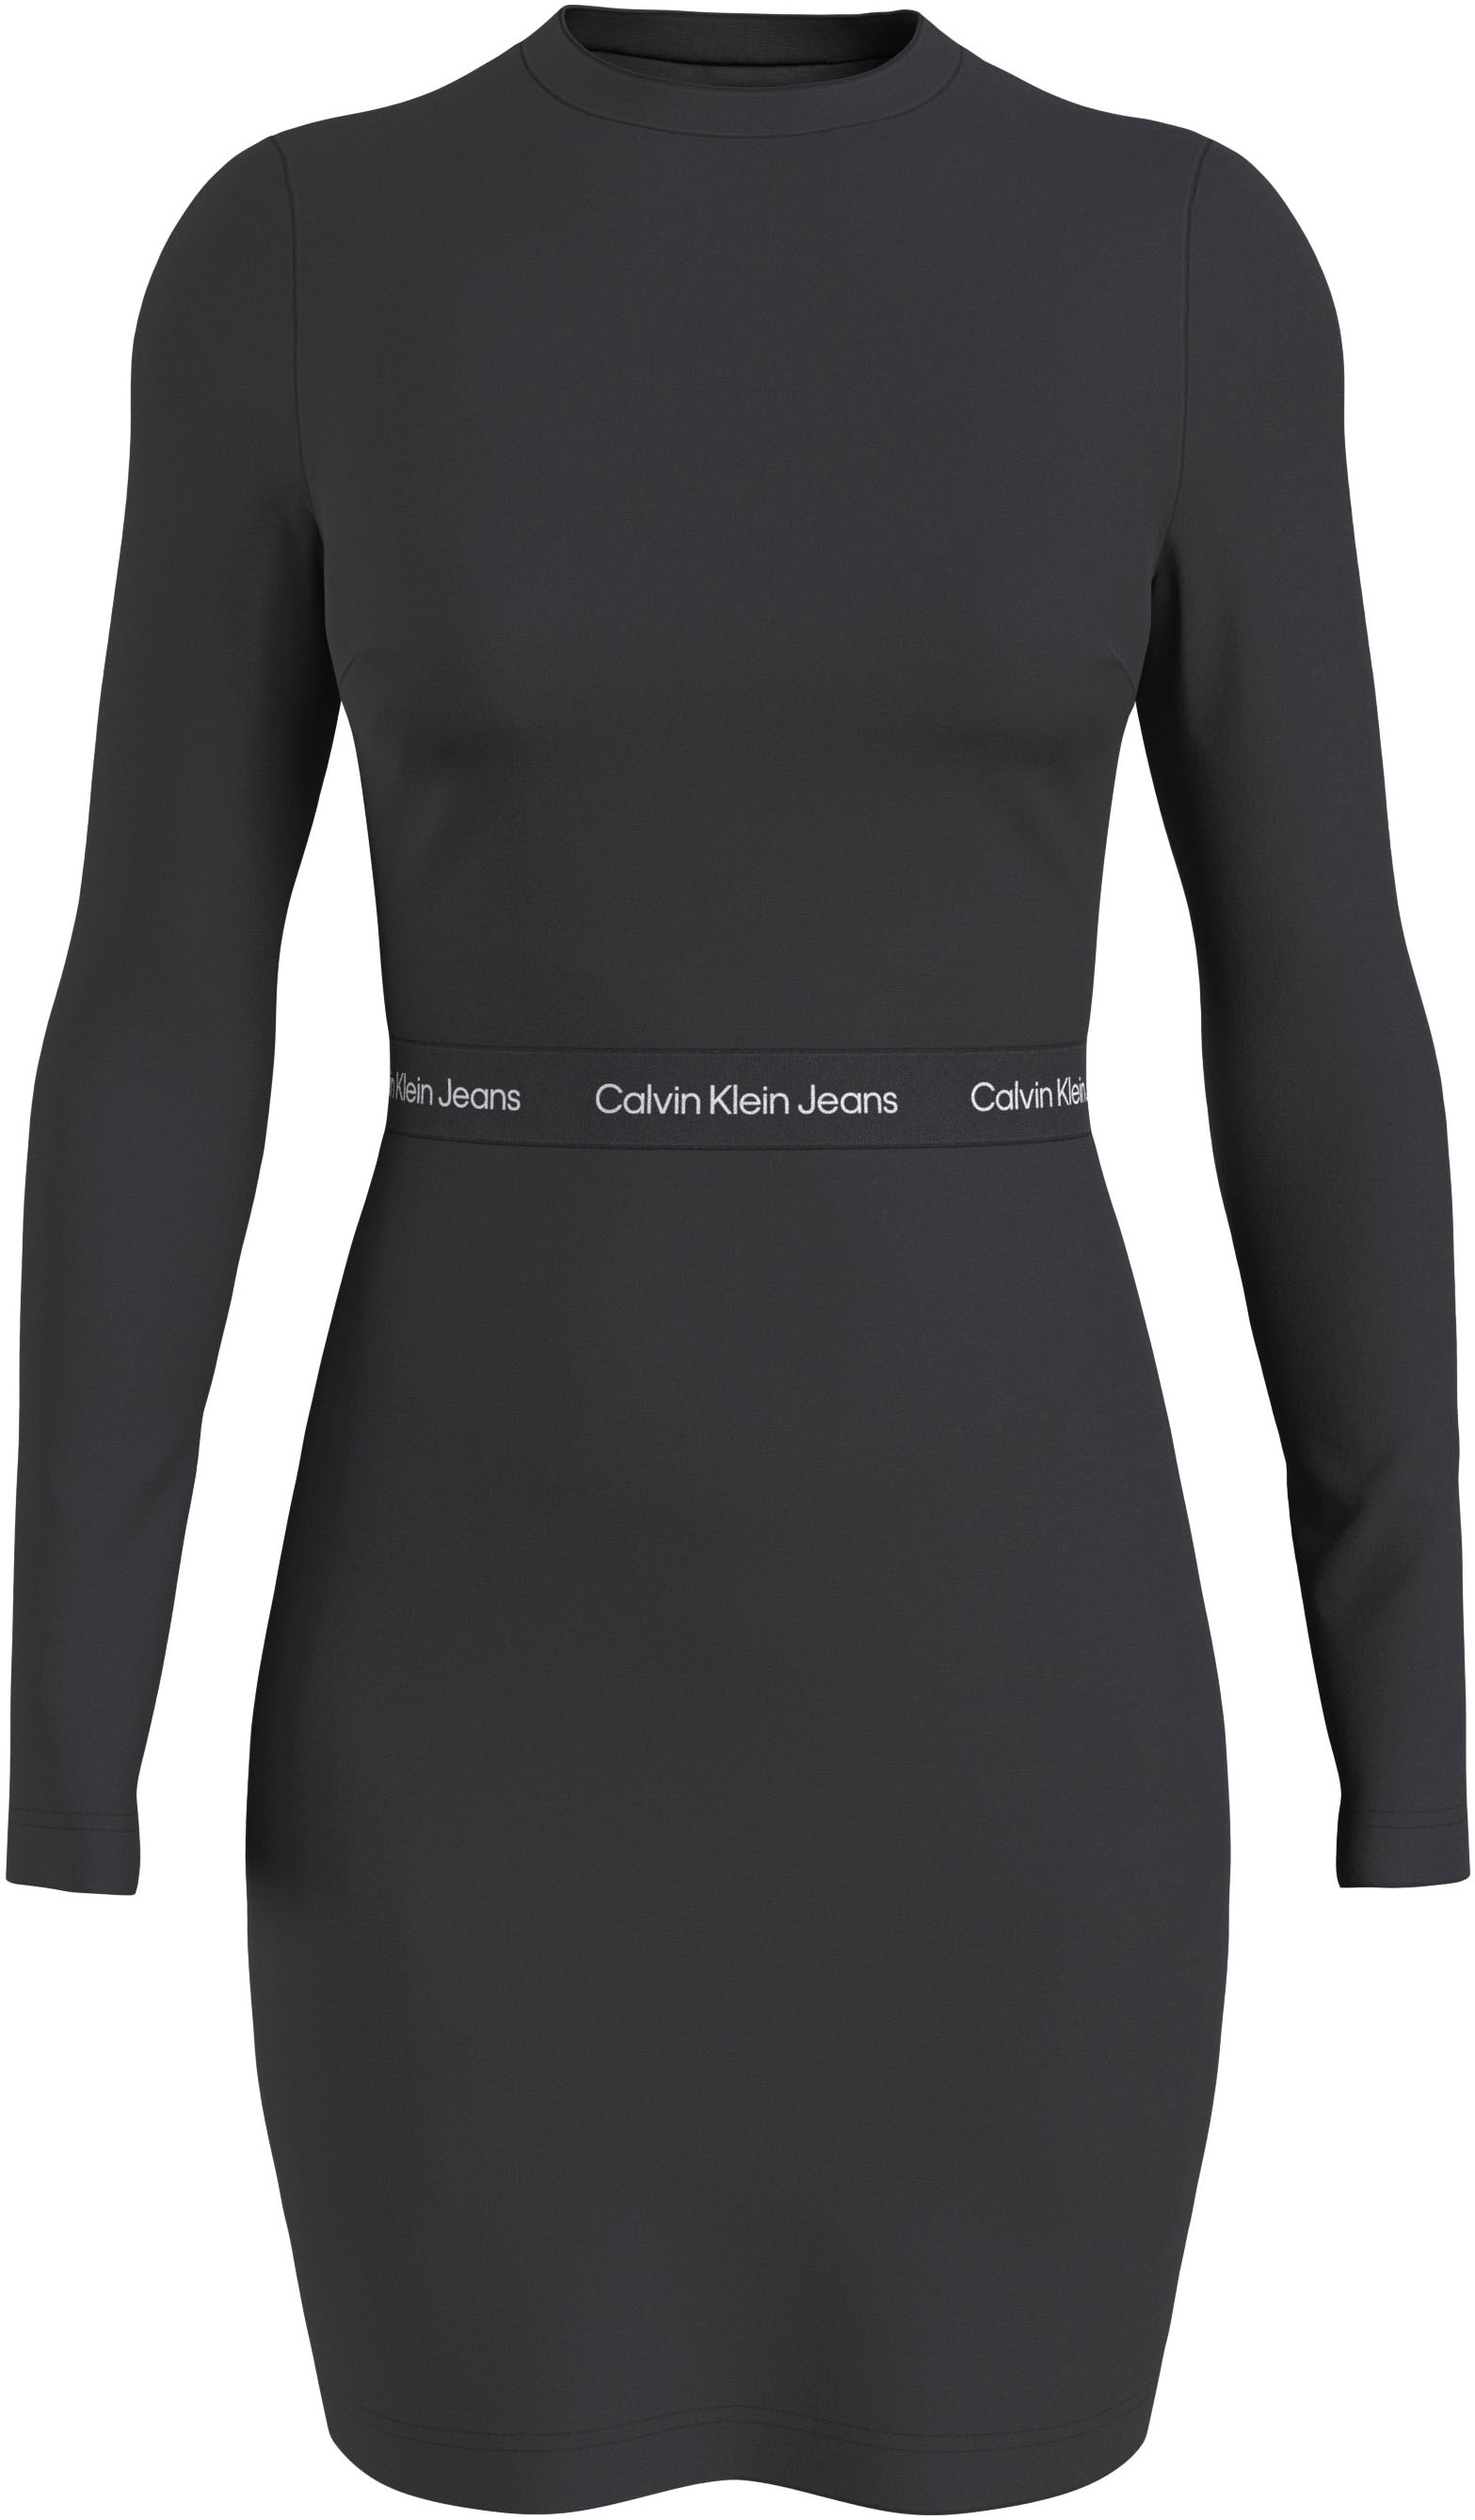 Gleich Calvin Klein Kleider online bestellen bei OTTO